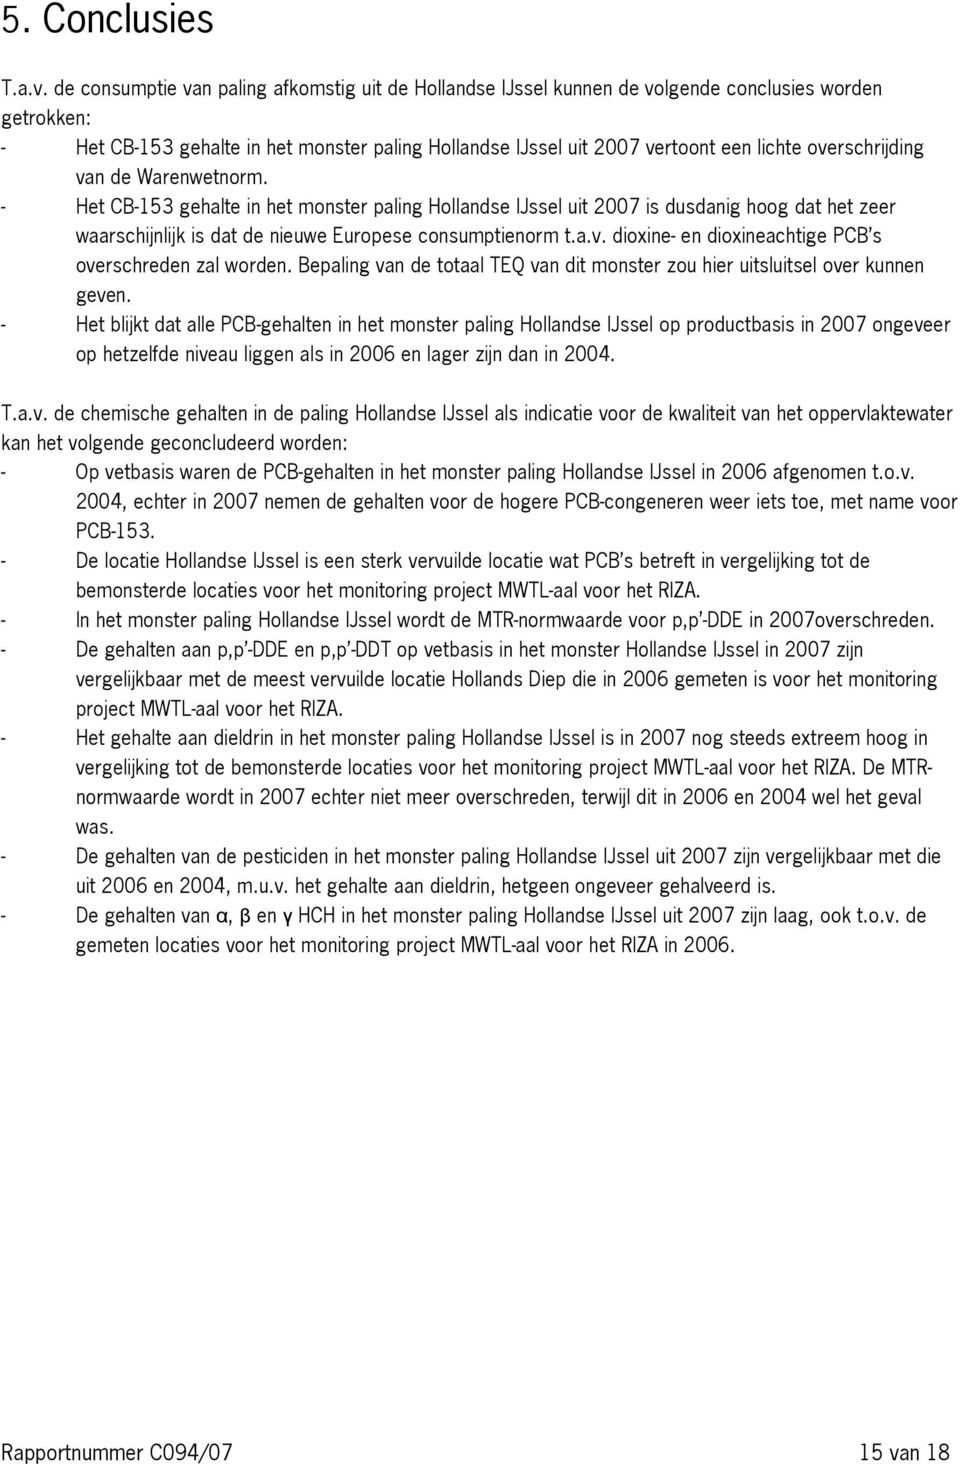 overschrijding van de Warenwetnorm. - Het CB-153 gehalte in het monster paling Hollandse IJssel uit 2007 is dusdanig hoog dat het zeer waarschijnlijk is dat de nieuwe Europese consumptienorm t.a.v. dioxine- en dioxineachtige PCB s overschreden zal worden.